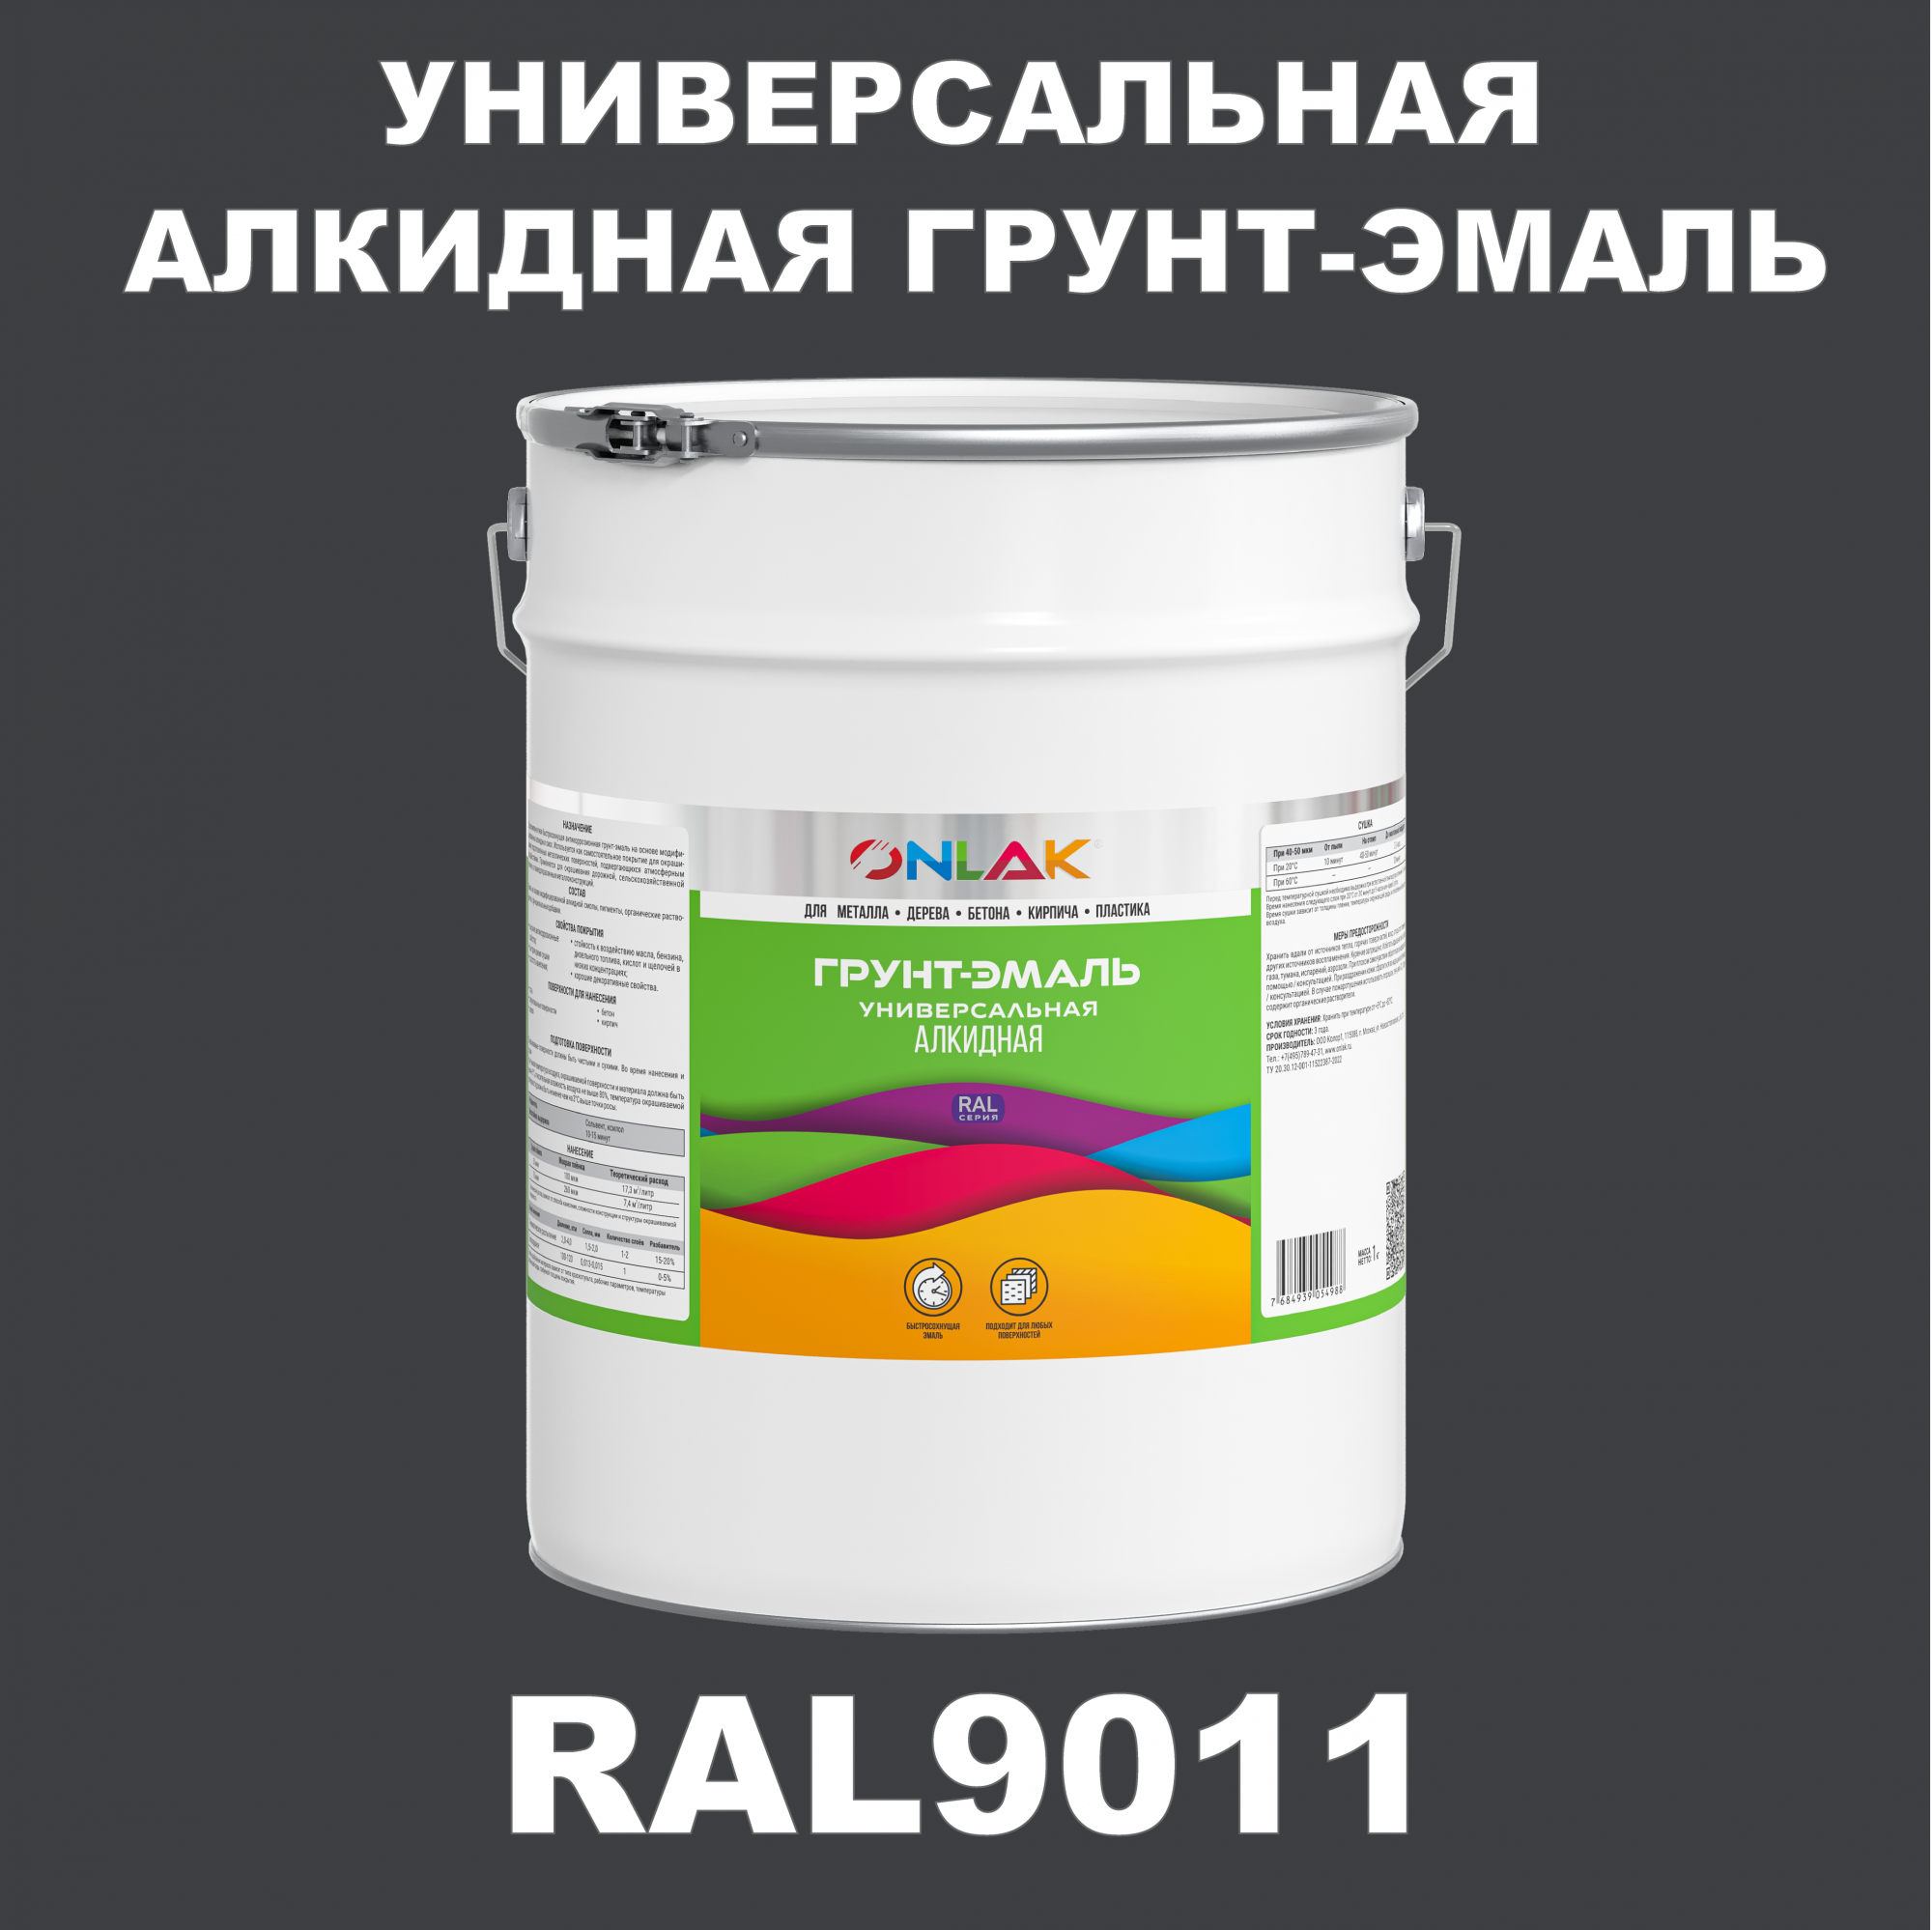 Грунт-эмаль ONLAK 1К RAL9011 антикоррозионная алкидная по металлу по ржавчине 20 кг